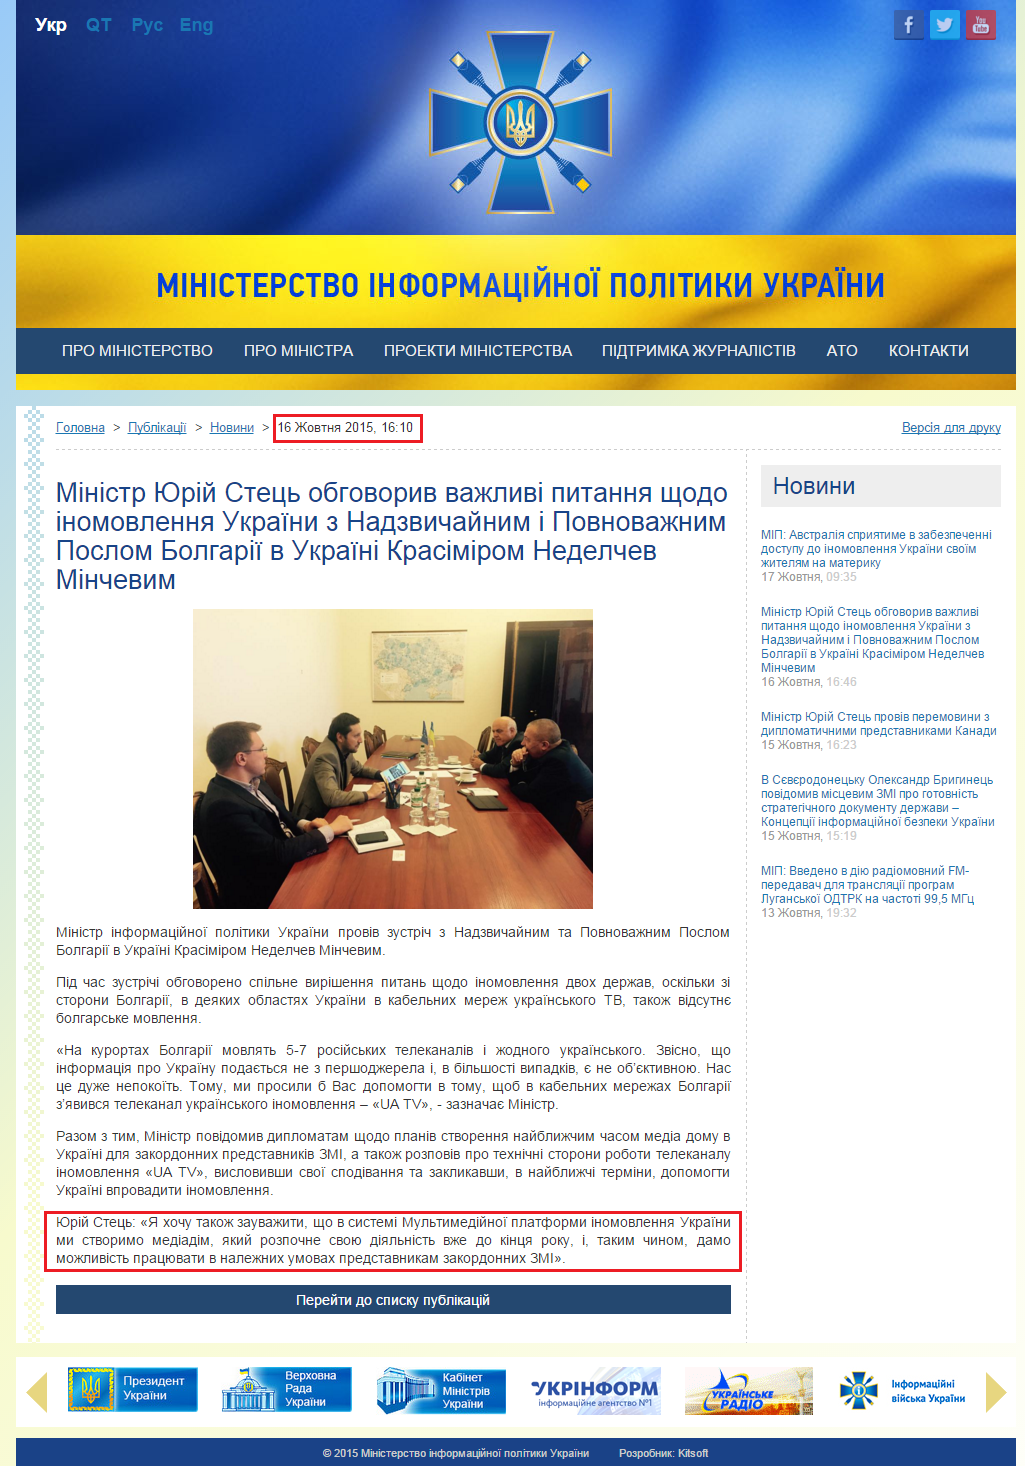 http://mip.gov.ua/news/702.html